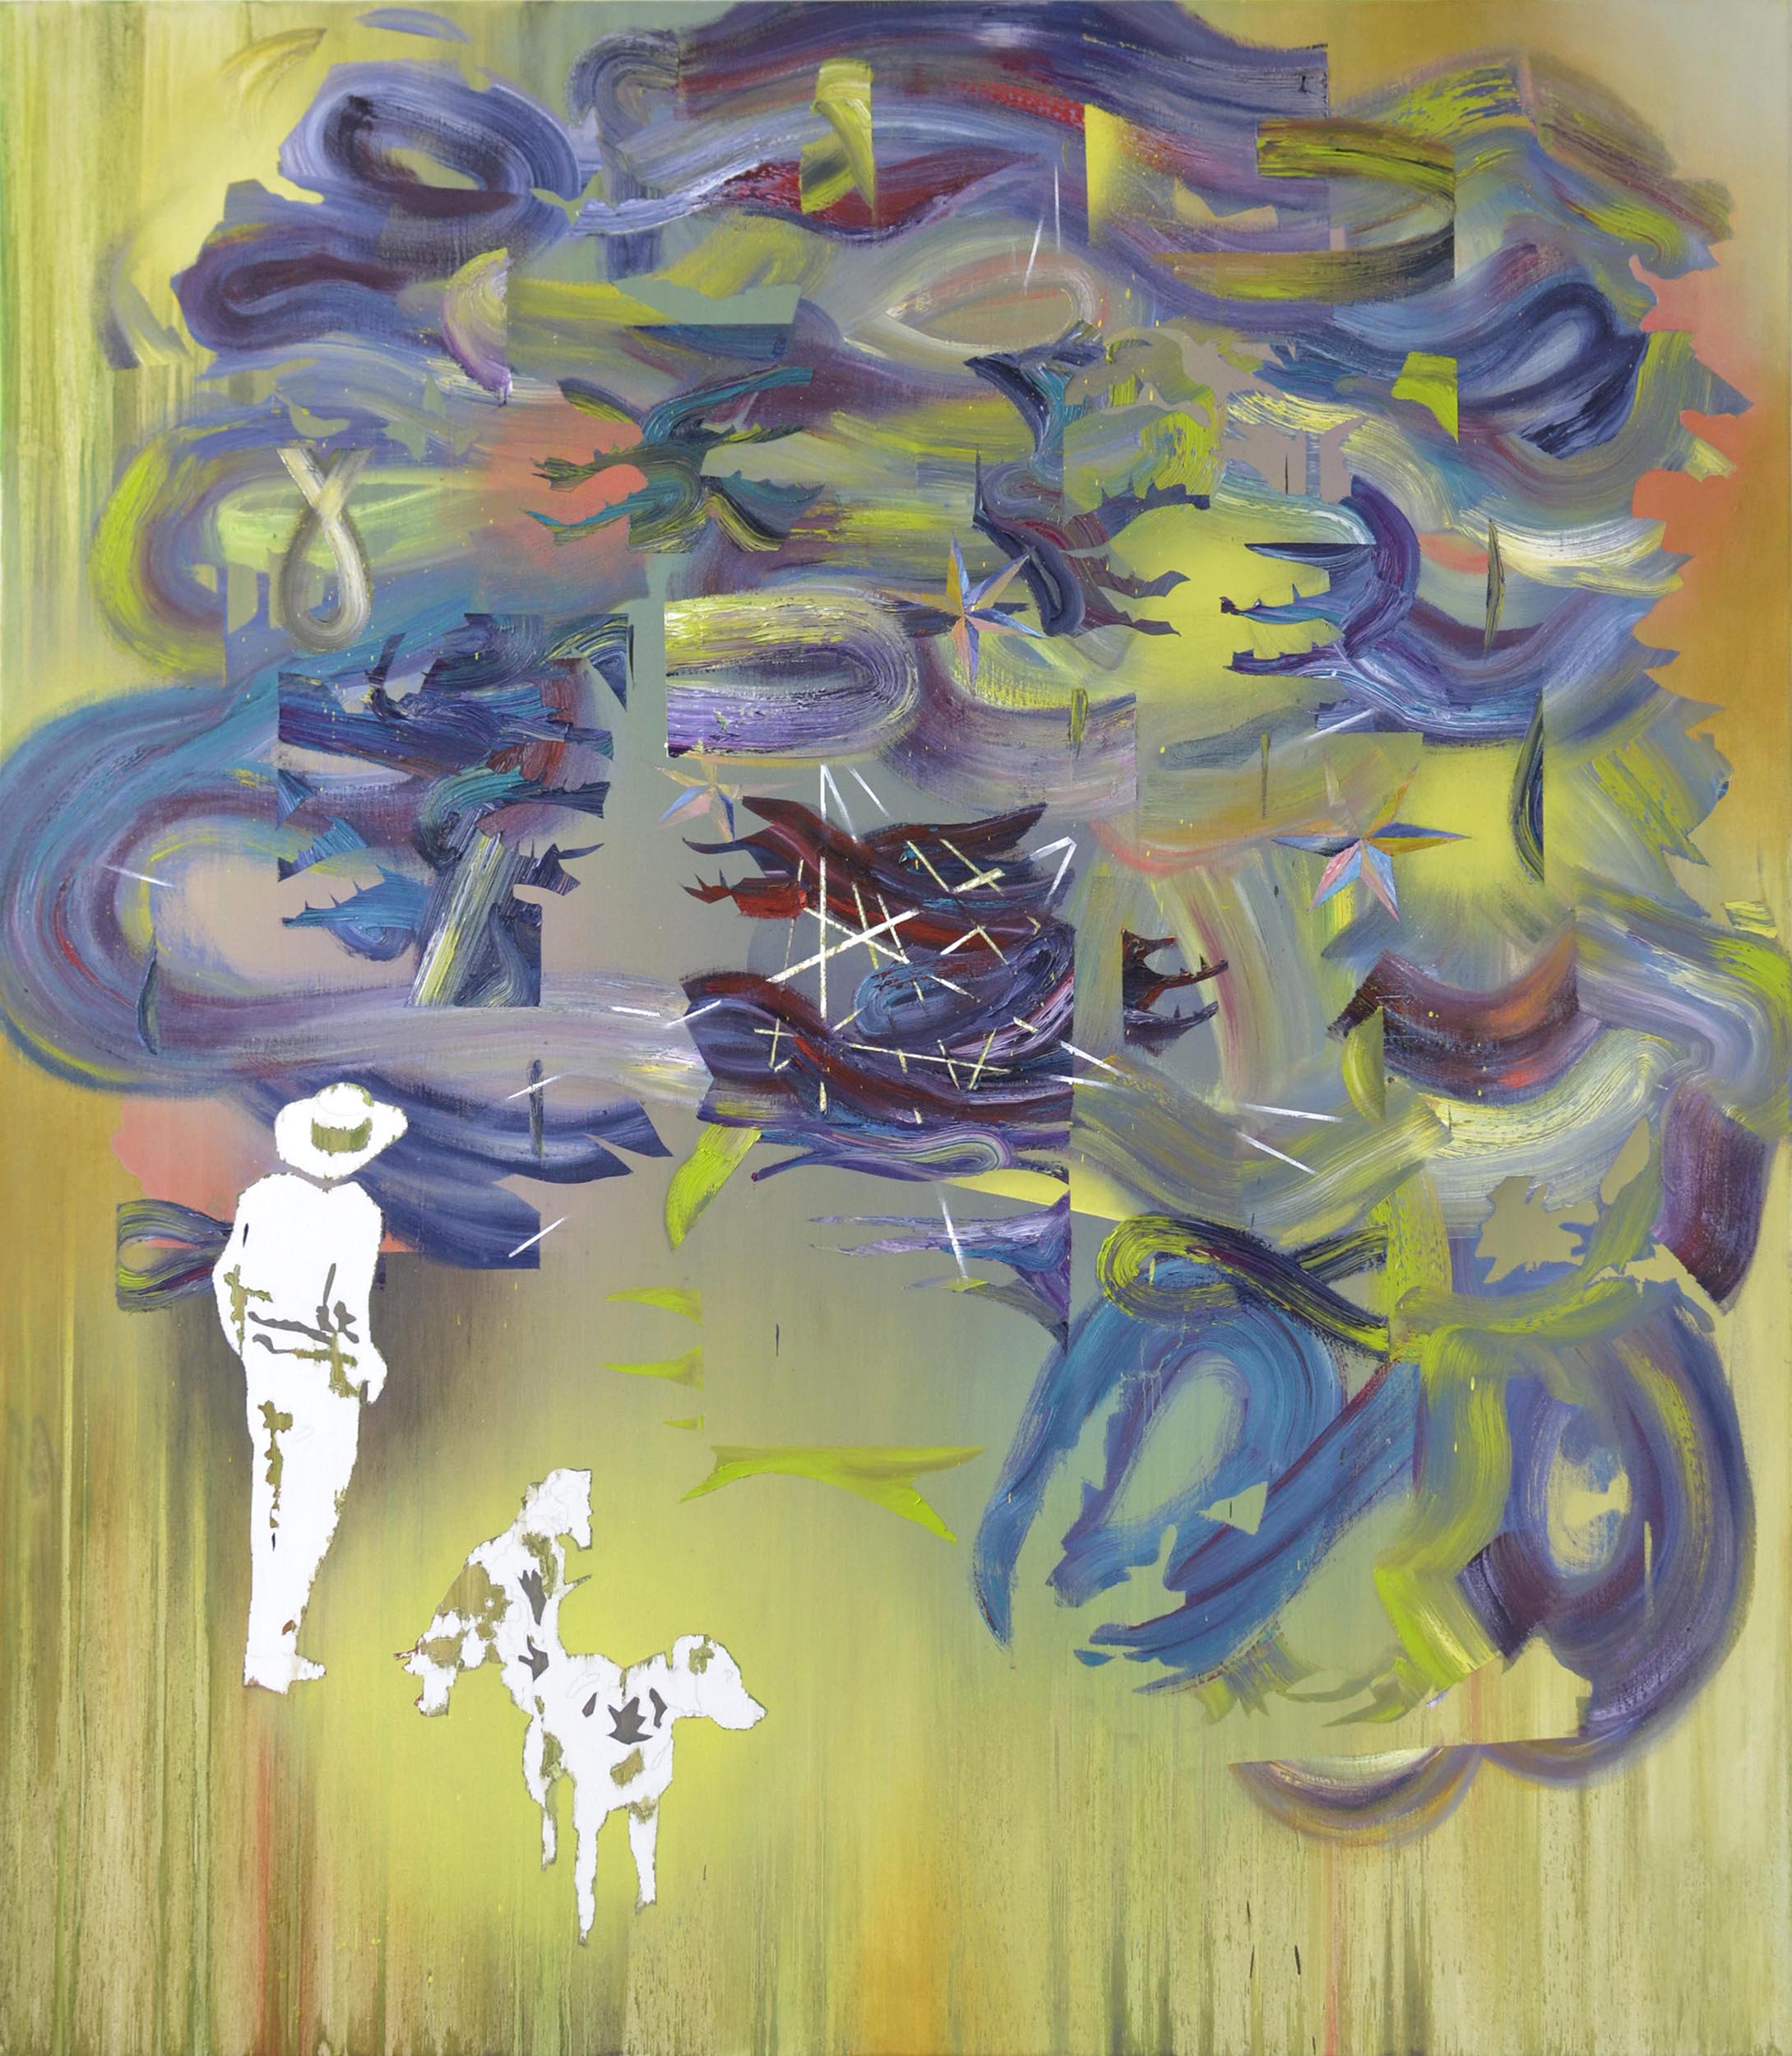   Dickicht  oil on canvas 150 x 120 cm, 2015 